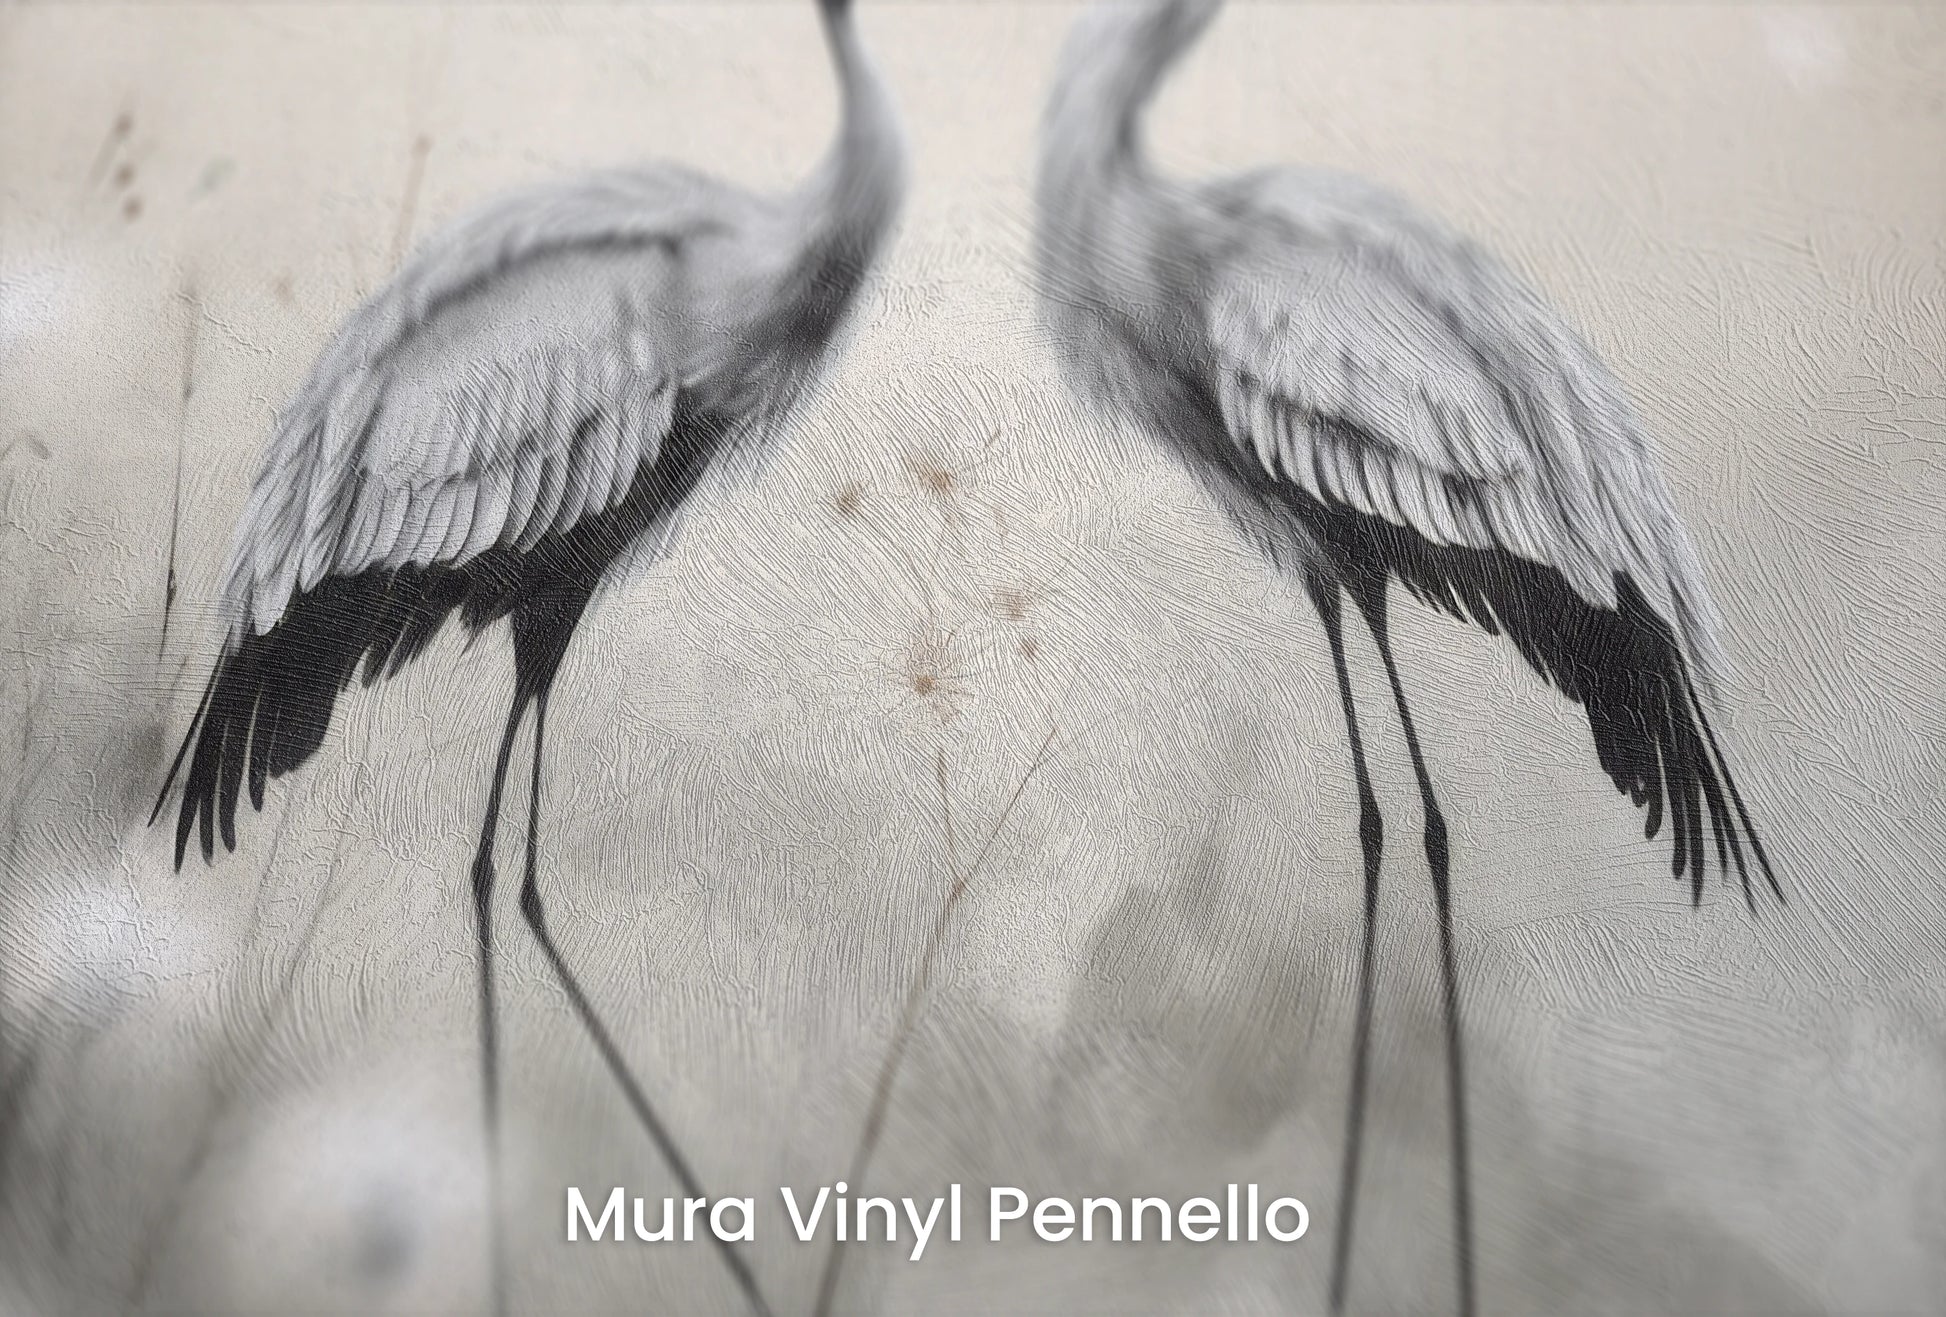 Zbliżenie na artystyczną fototapetę o nazwie Dandelion Wishes na podłożu Mura Vinyl Pennello - faktura pociągnięć pędzla malarskiego.